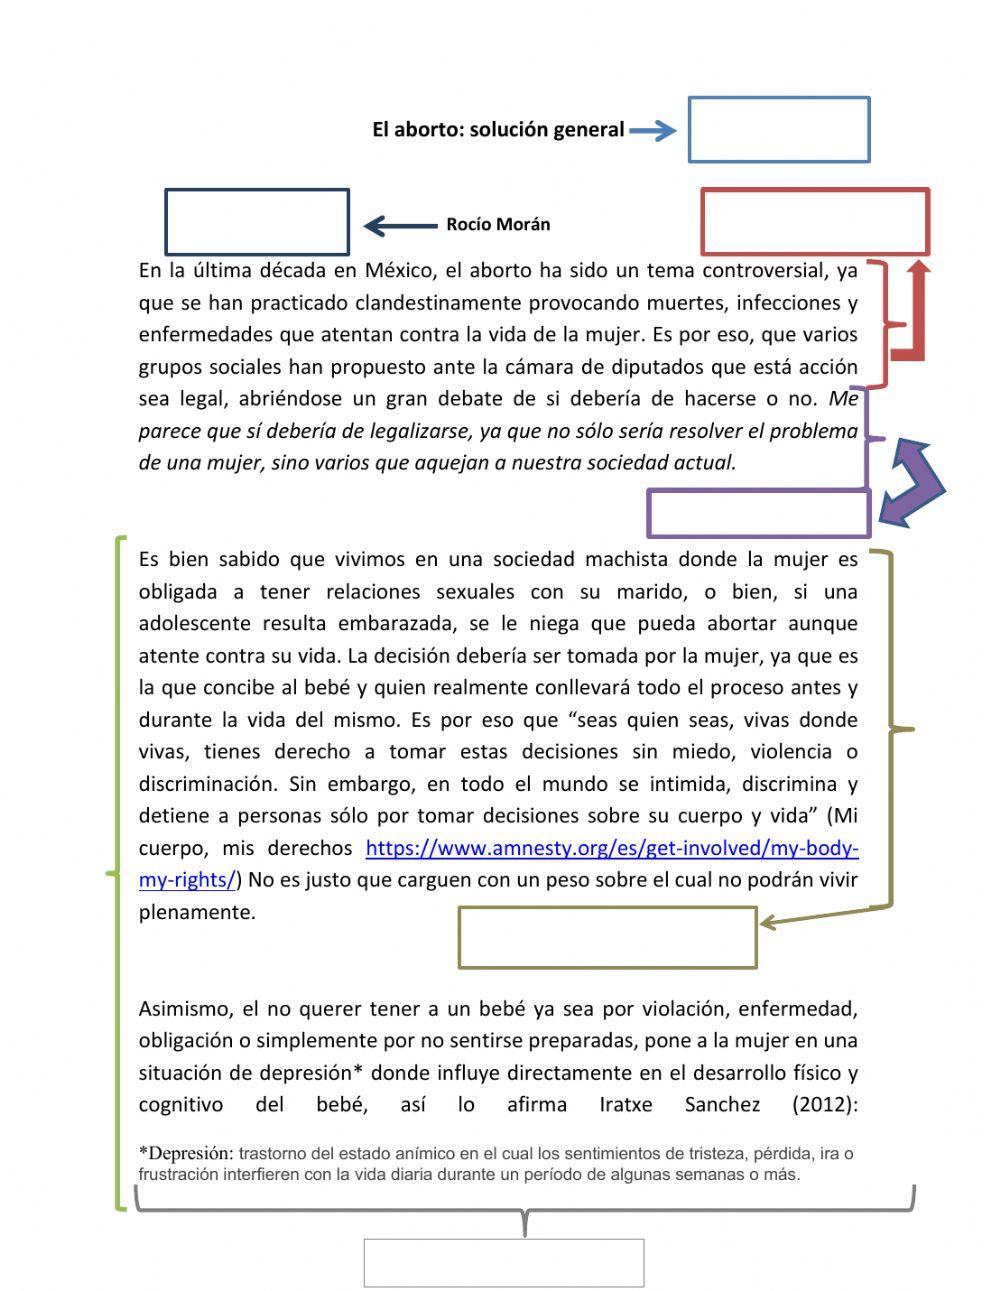 Características y elementos del Ensayo.